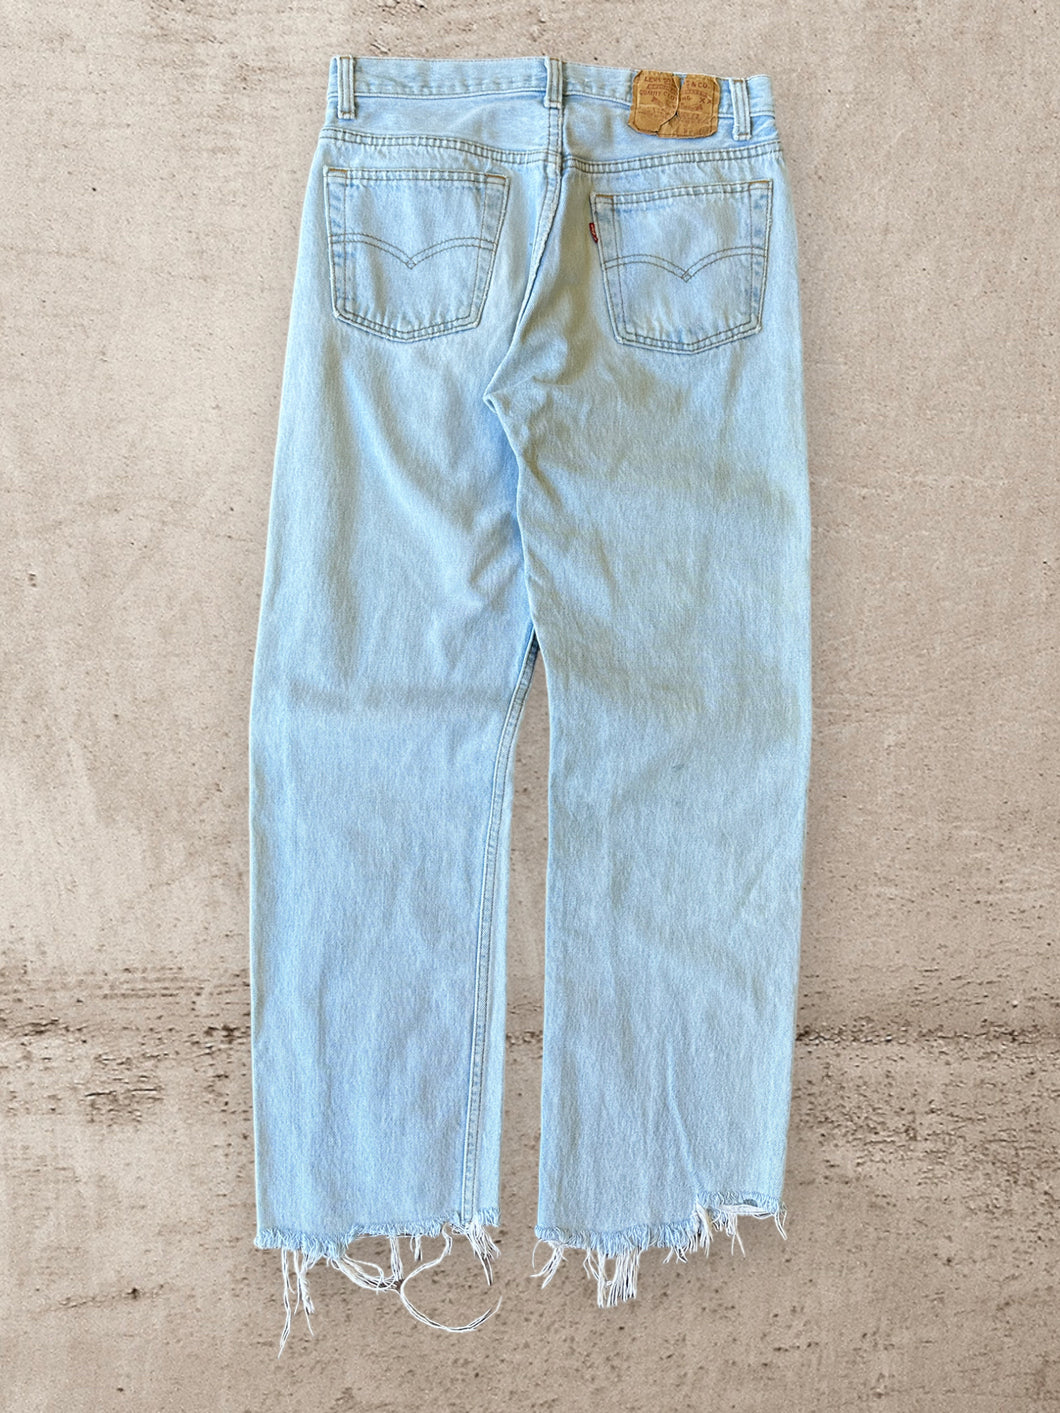 90s Levi 505 Light Wash Jeans - 29x27